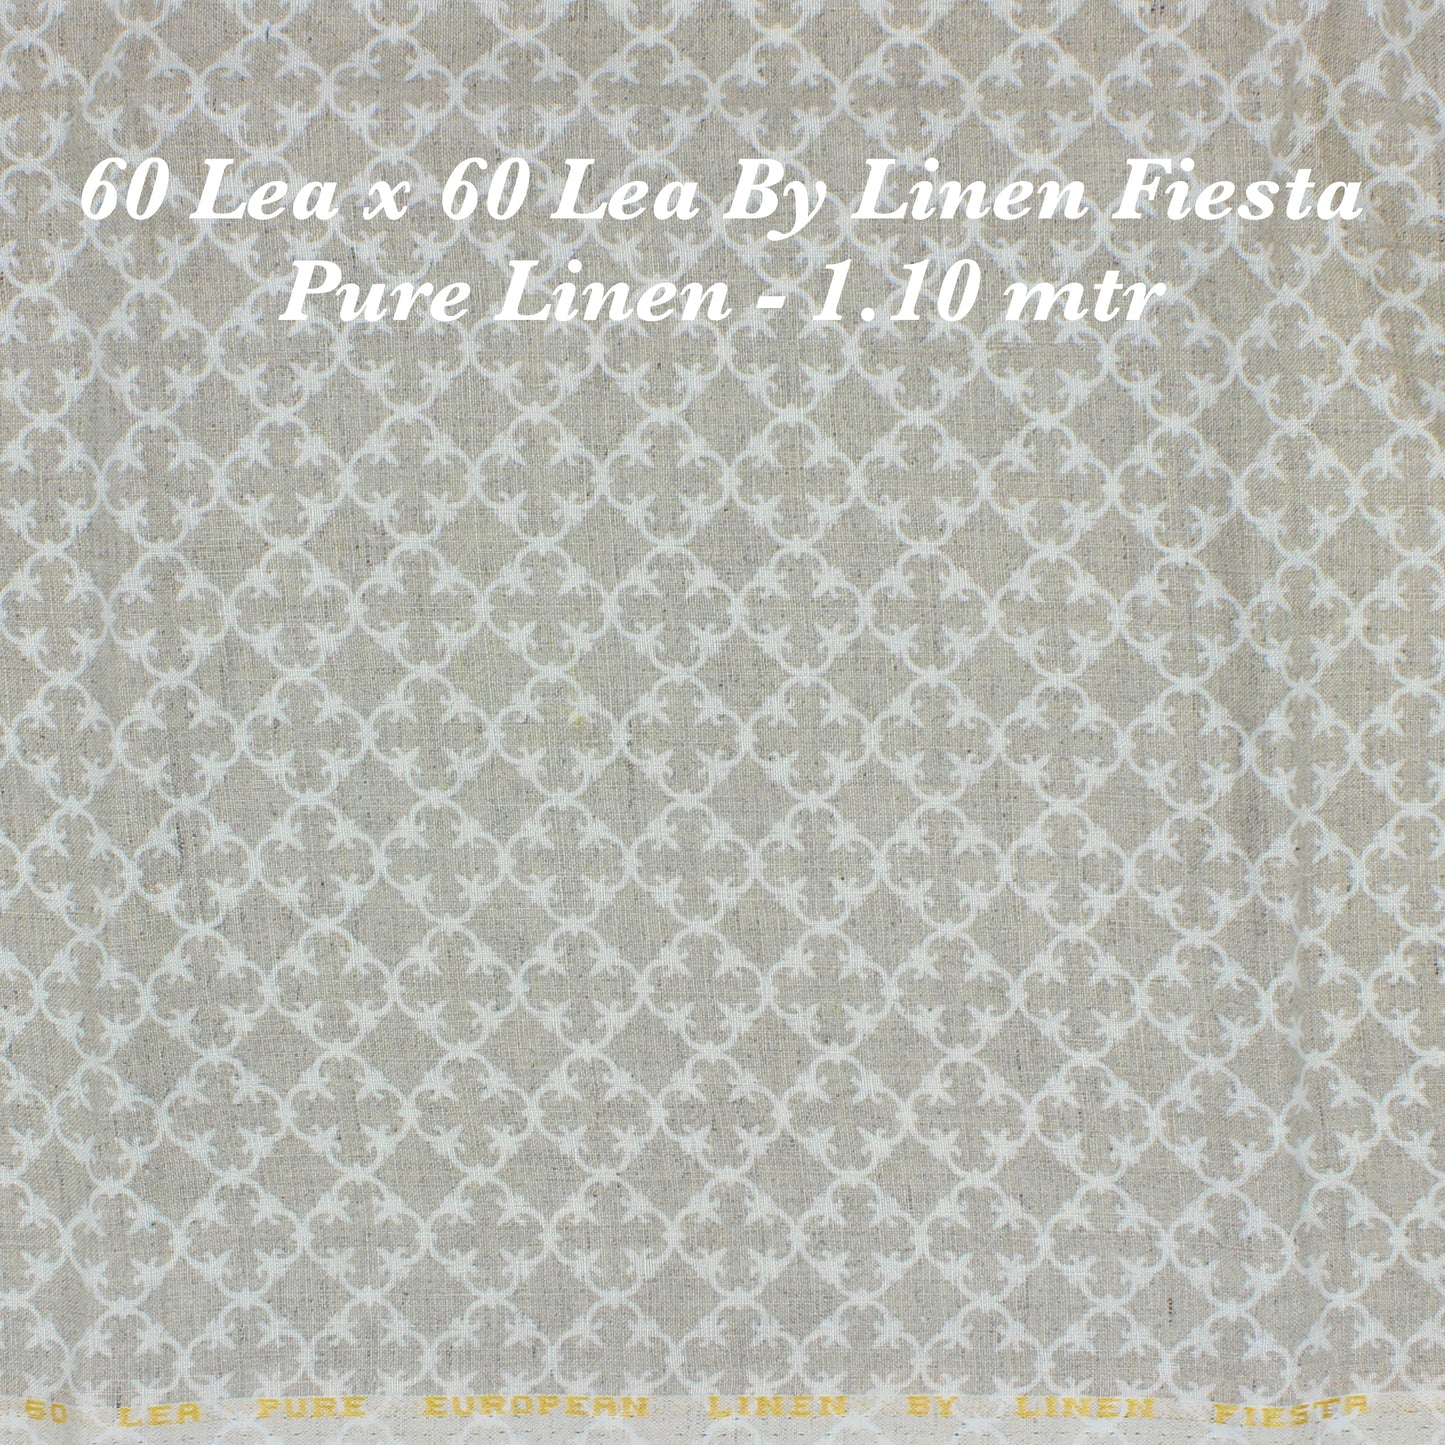 1.10 Pure Linen Shirting - END BIT (50%) - Linen Studio